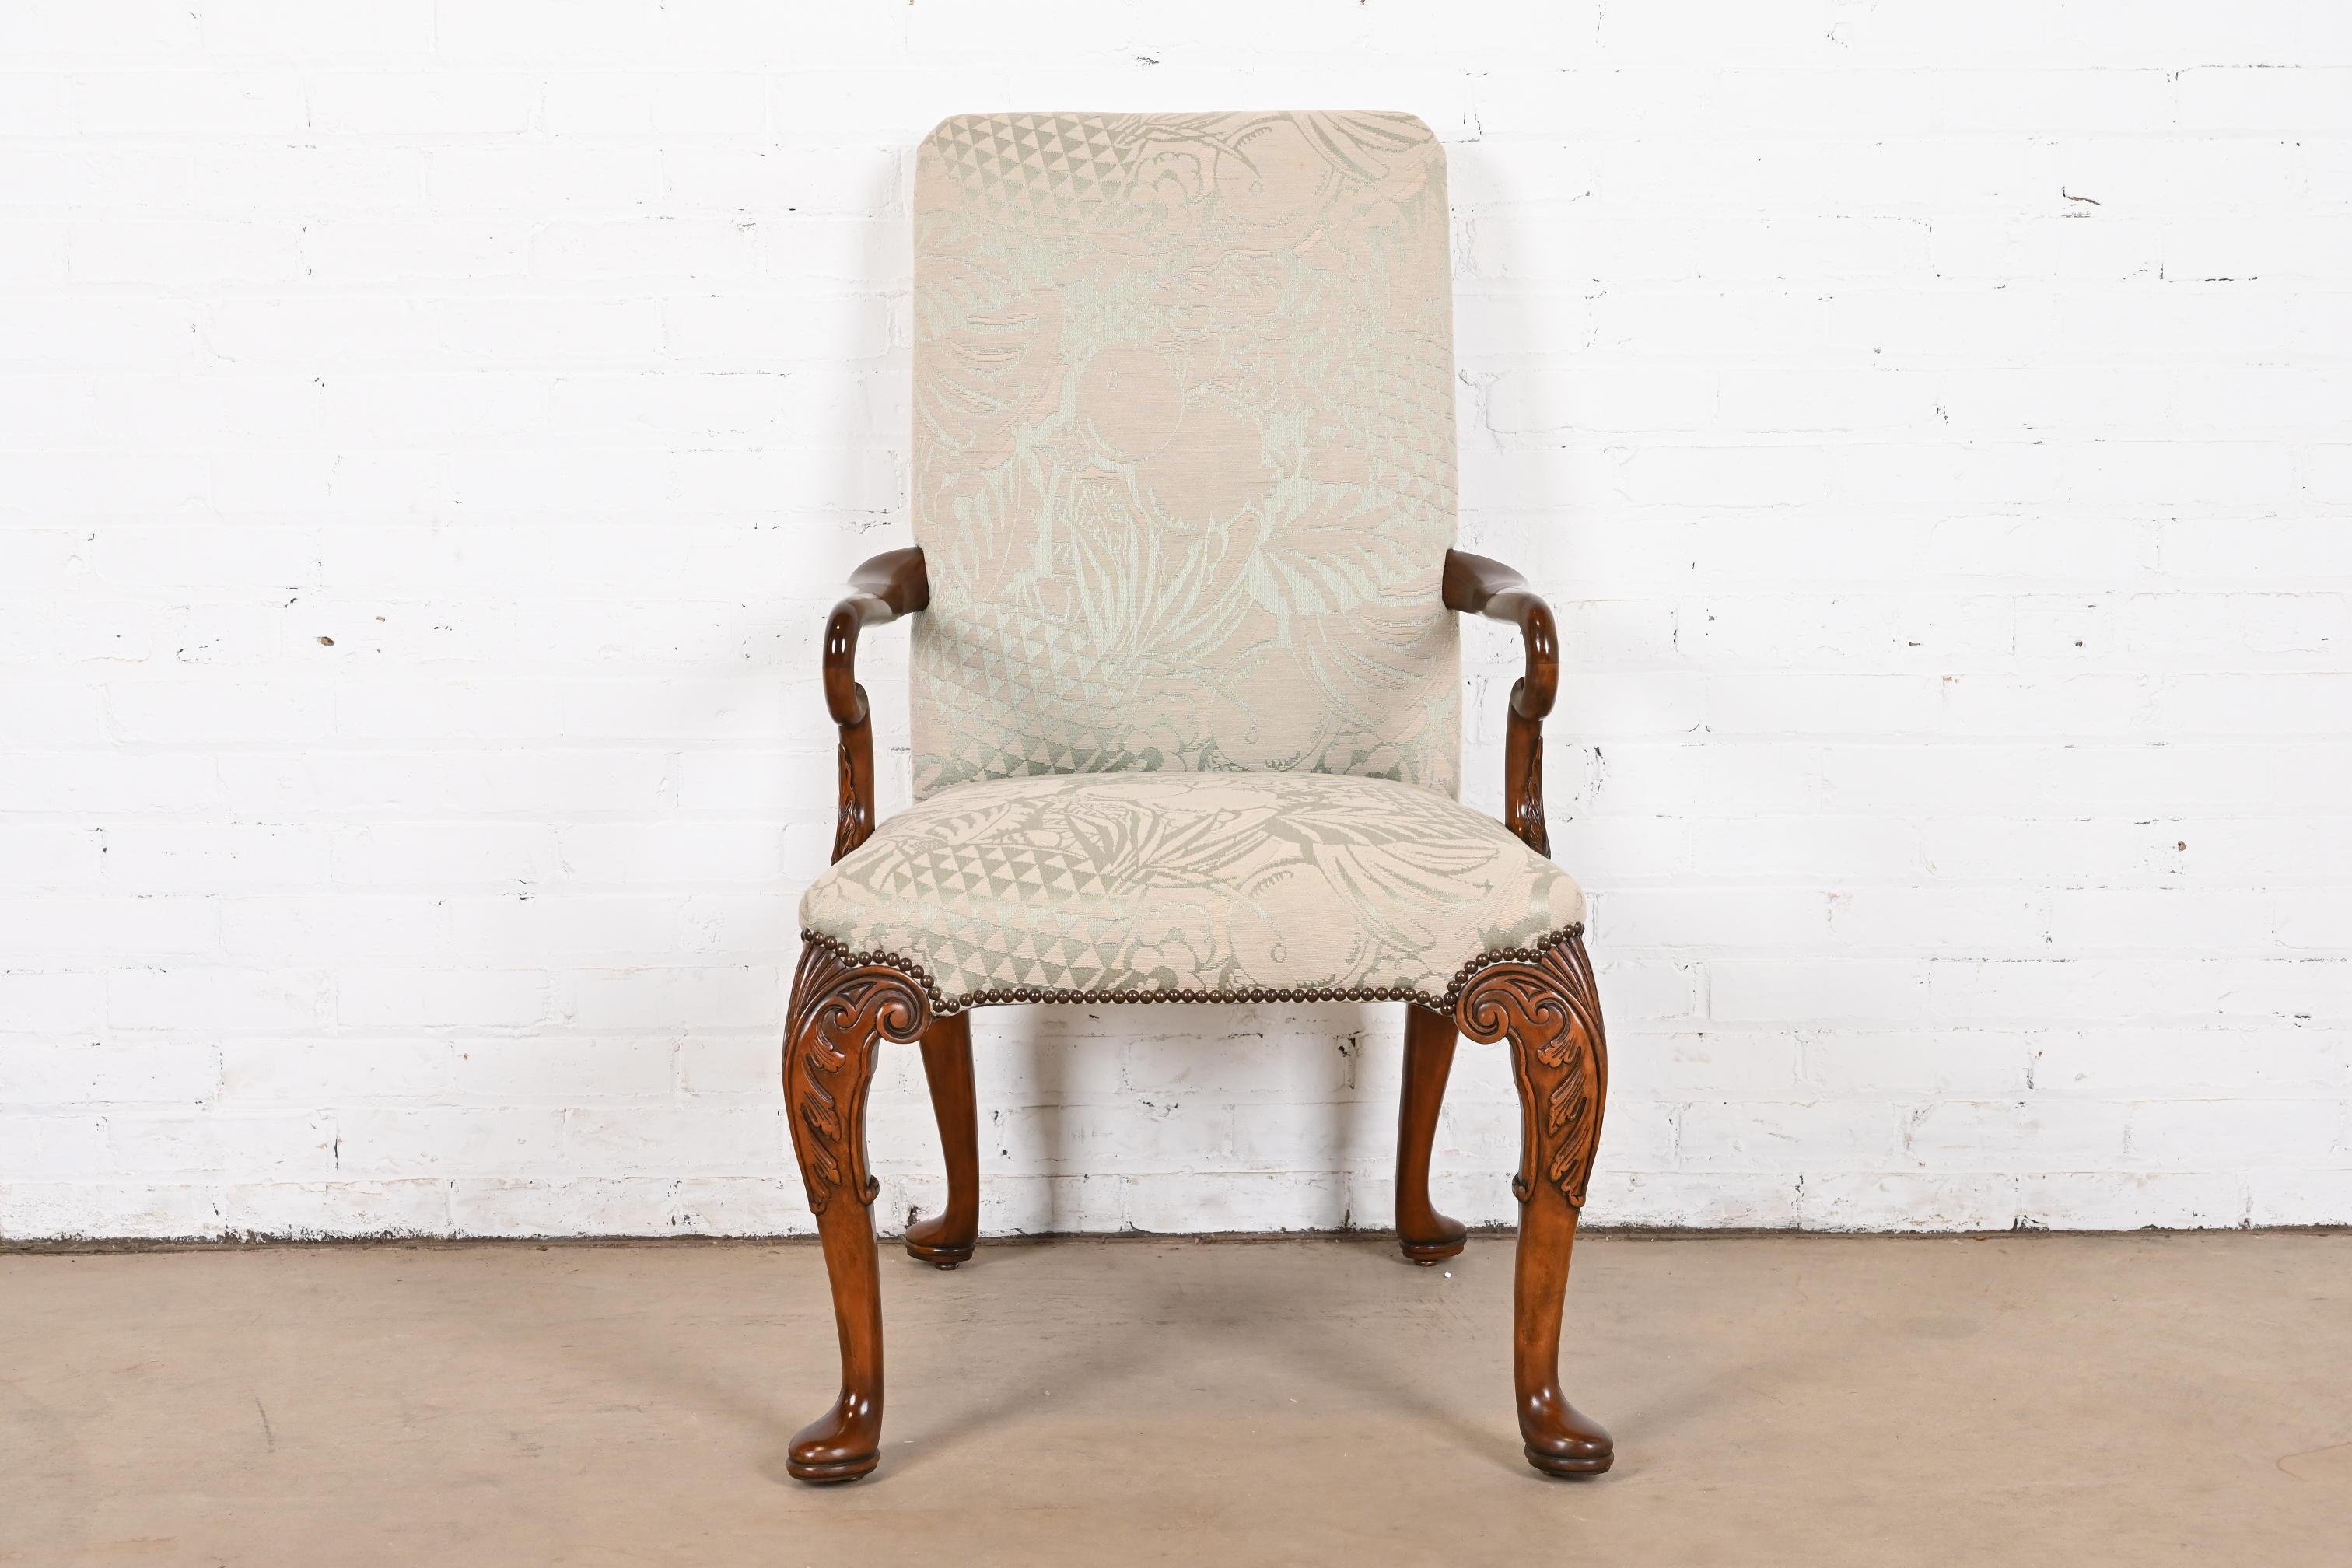 Magnifique fauteuil ou chaise longue de style géorgien, Chippendale ou Queen Anne

Par Baker Furniture

USA, Circa 1980

Cadre en acajou sculpté, tapisserie à motifs de fruits cloutés en laiton.

Dimensions : 24,5 